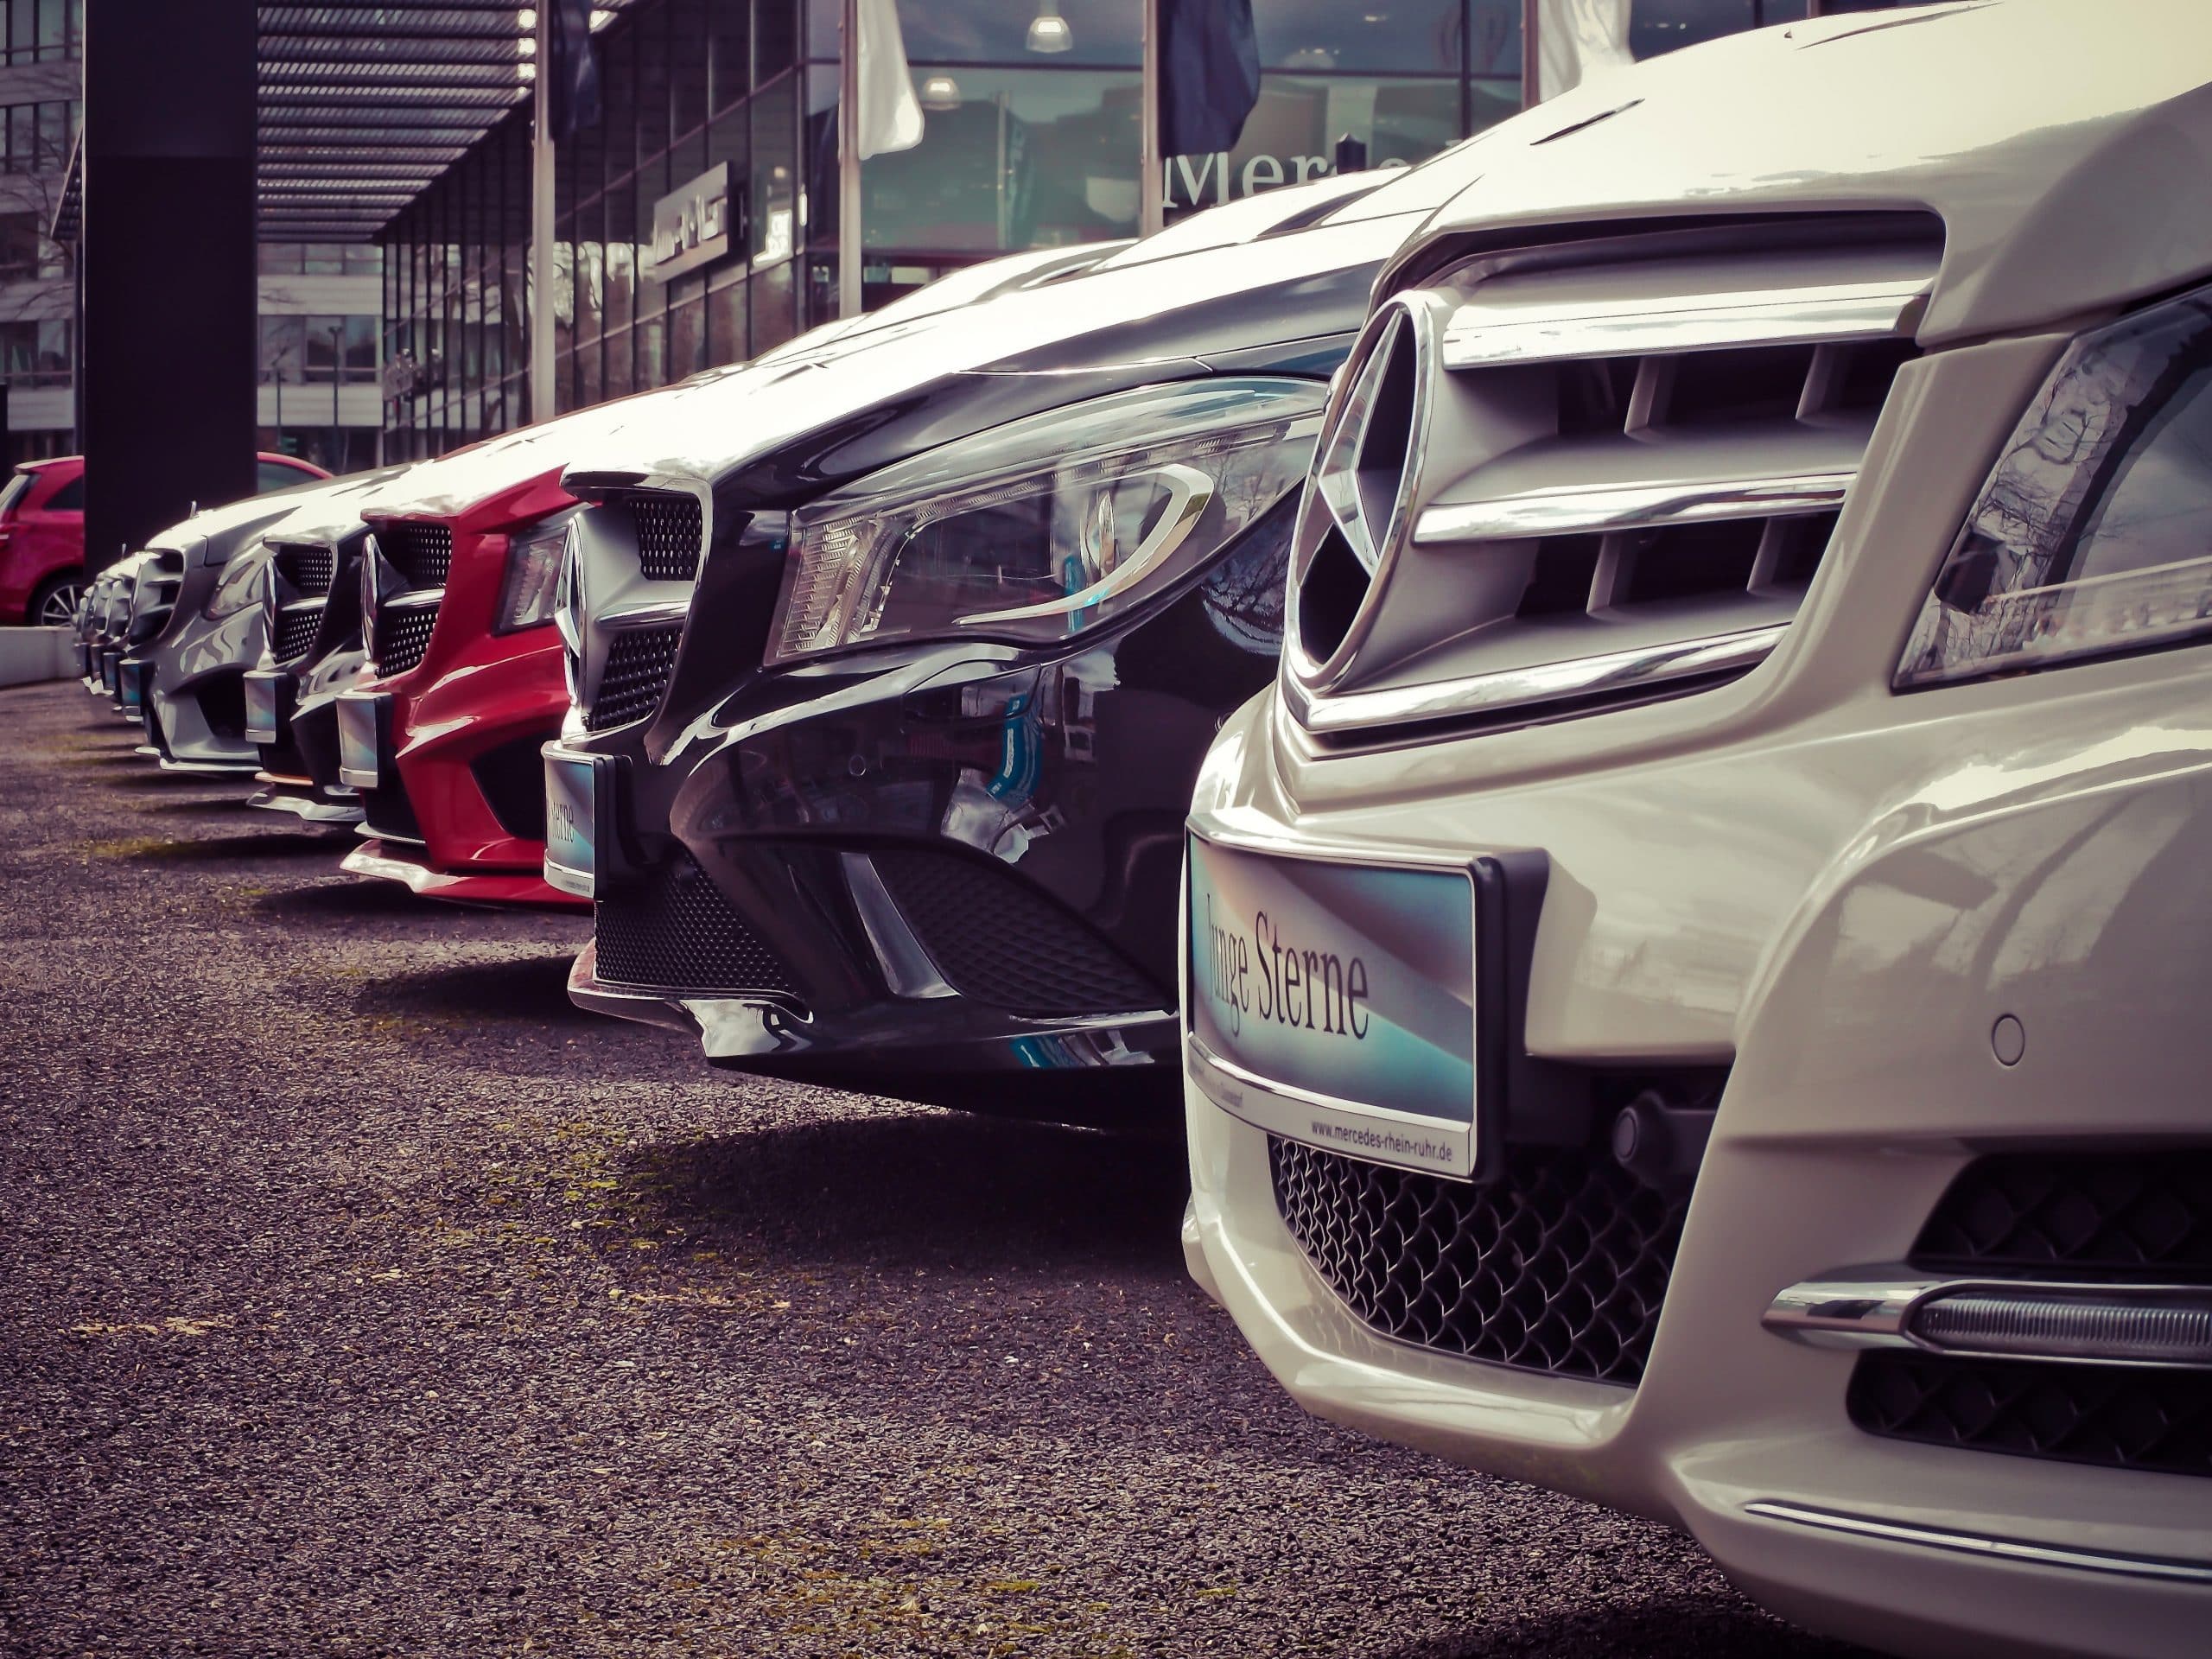 Em números gerais, foram vendidos quase 189 mil unidades de veículos novos, entre carros de passeio, utilitários leves, como picapes e vans, caminhões e ônibus.